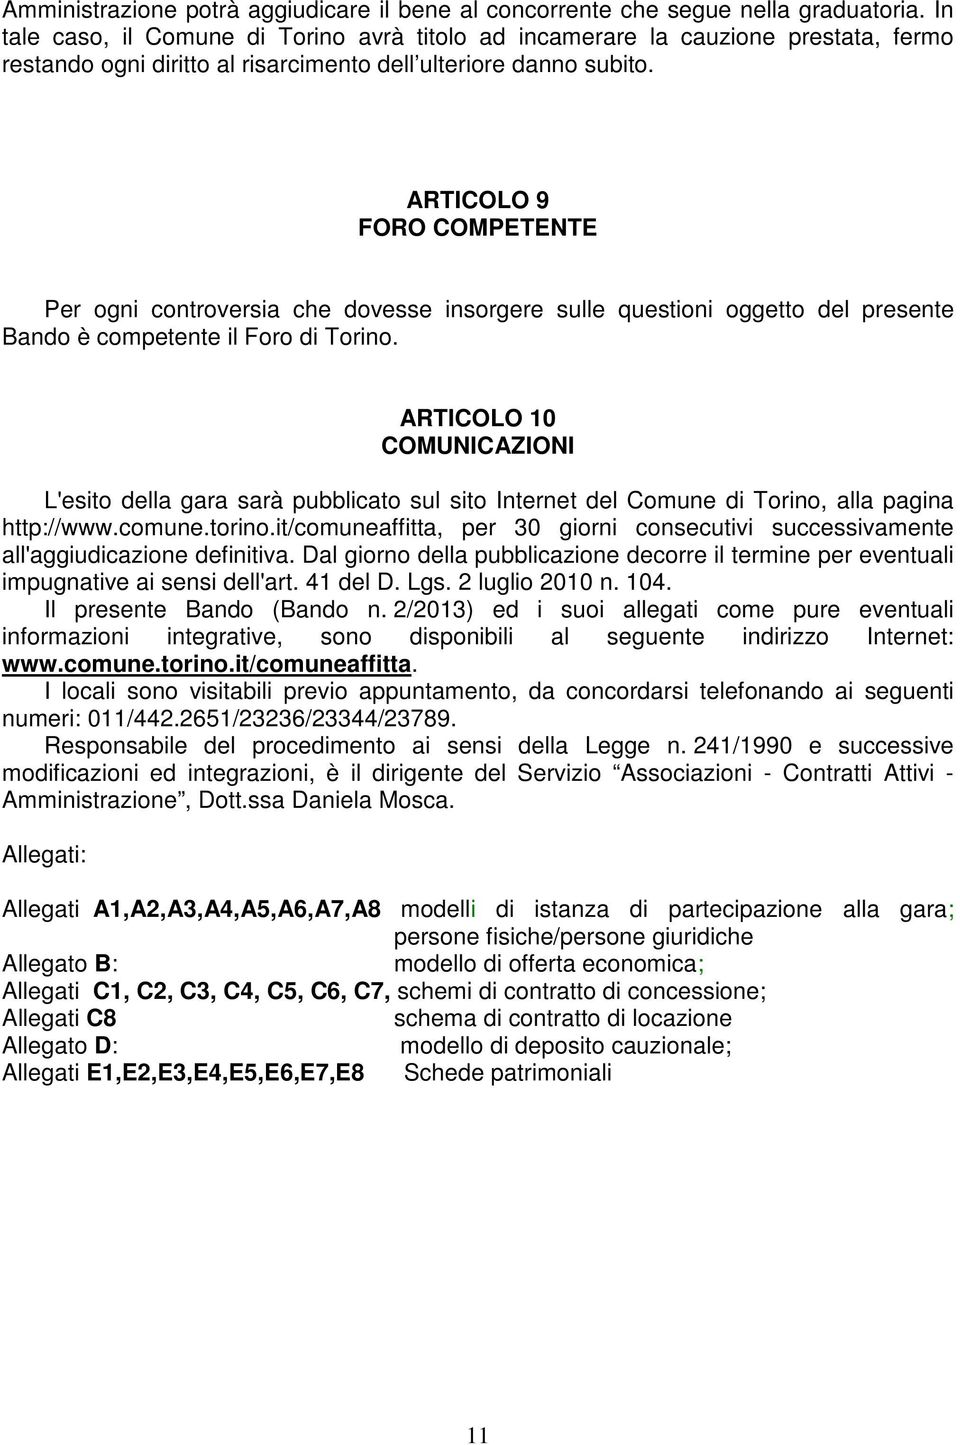 ARTICOLO 9 FORO COMPETENTE Per ogni controversia che dovesse insorgere sulle questioni oggetto del presente Bando è competente il Foro di Torino.